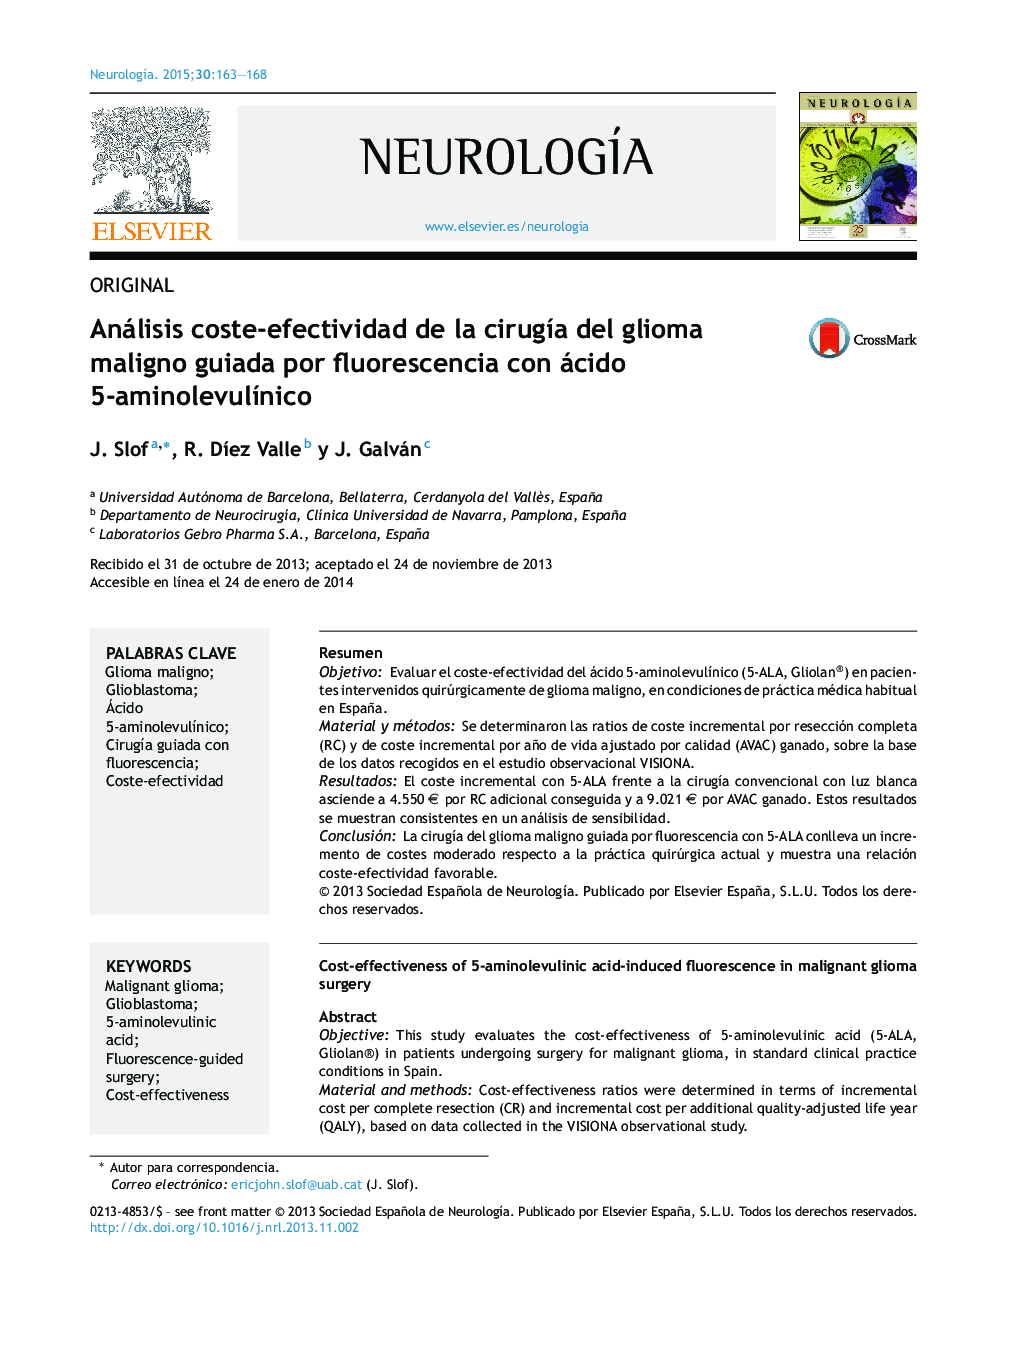 Análisis coste-efectividad de la cirugÃ­a del glioma maligno guiada por fluorescencia con ácido 5-aminolevulÃ­nico